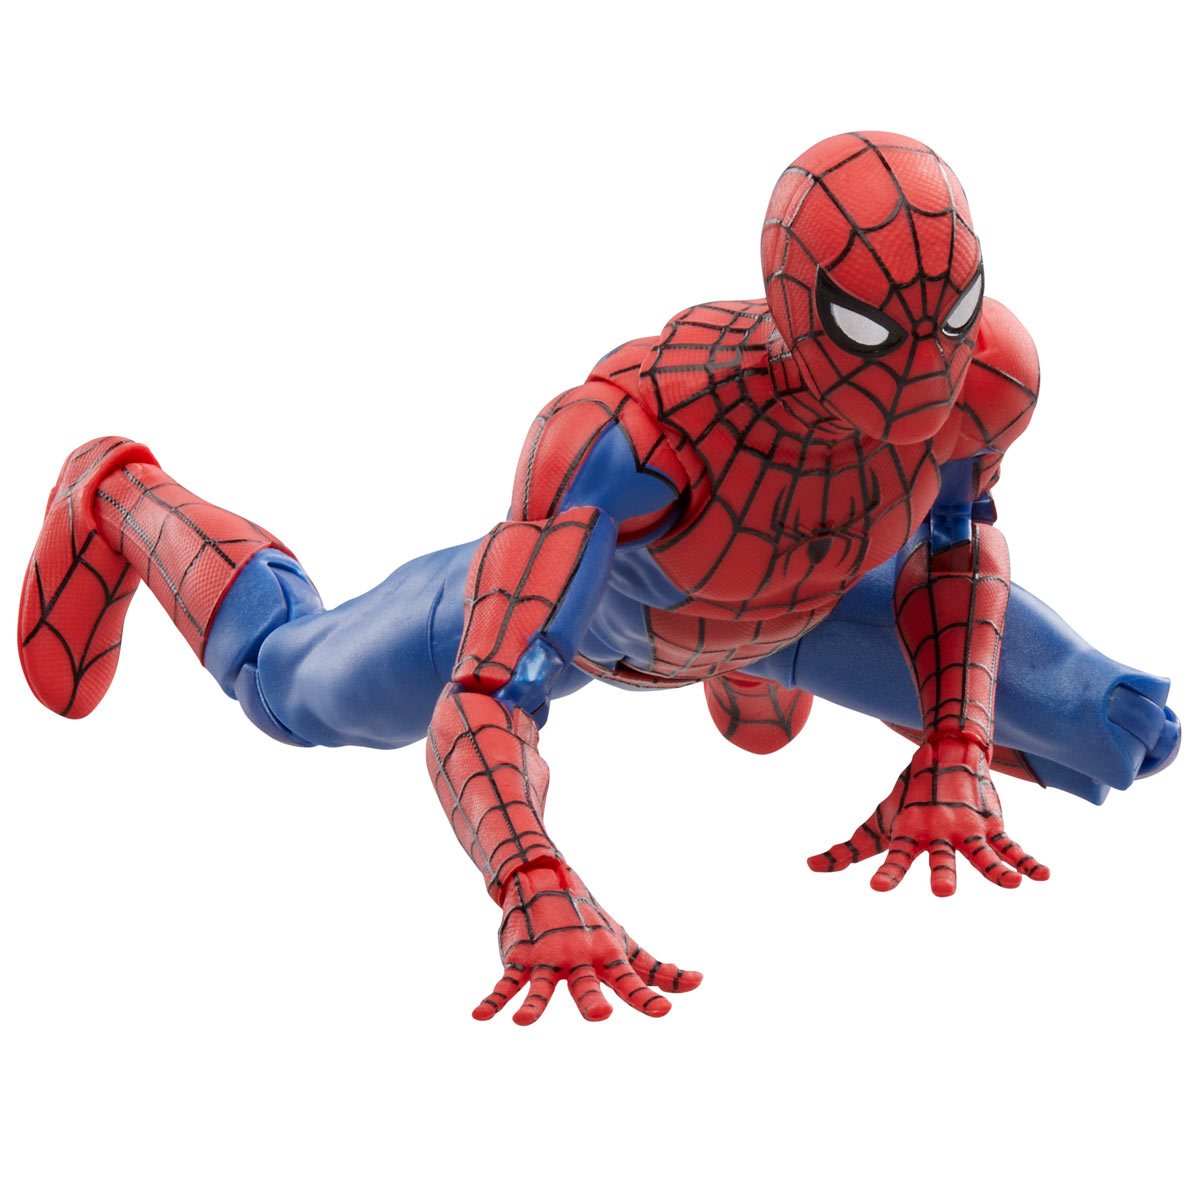 Spider-Man: No Way Home The Amazing Spider-Man Figure